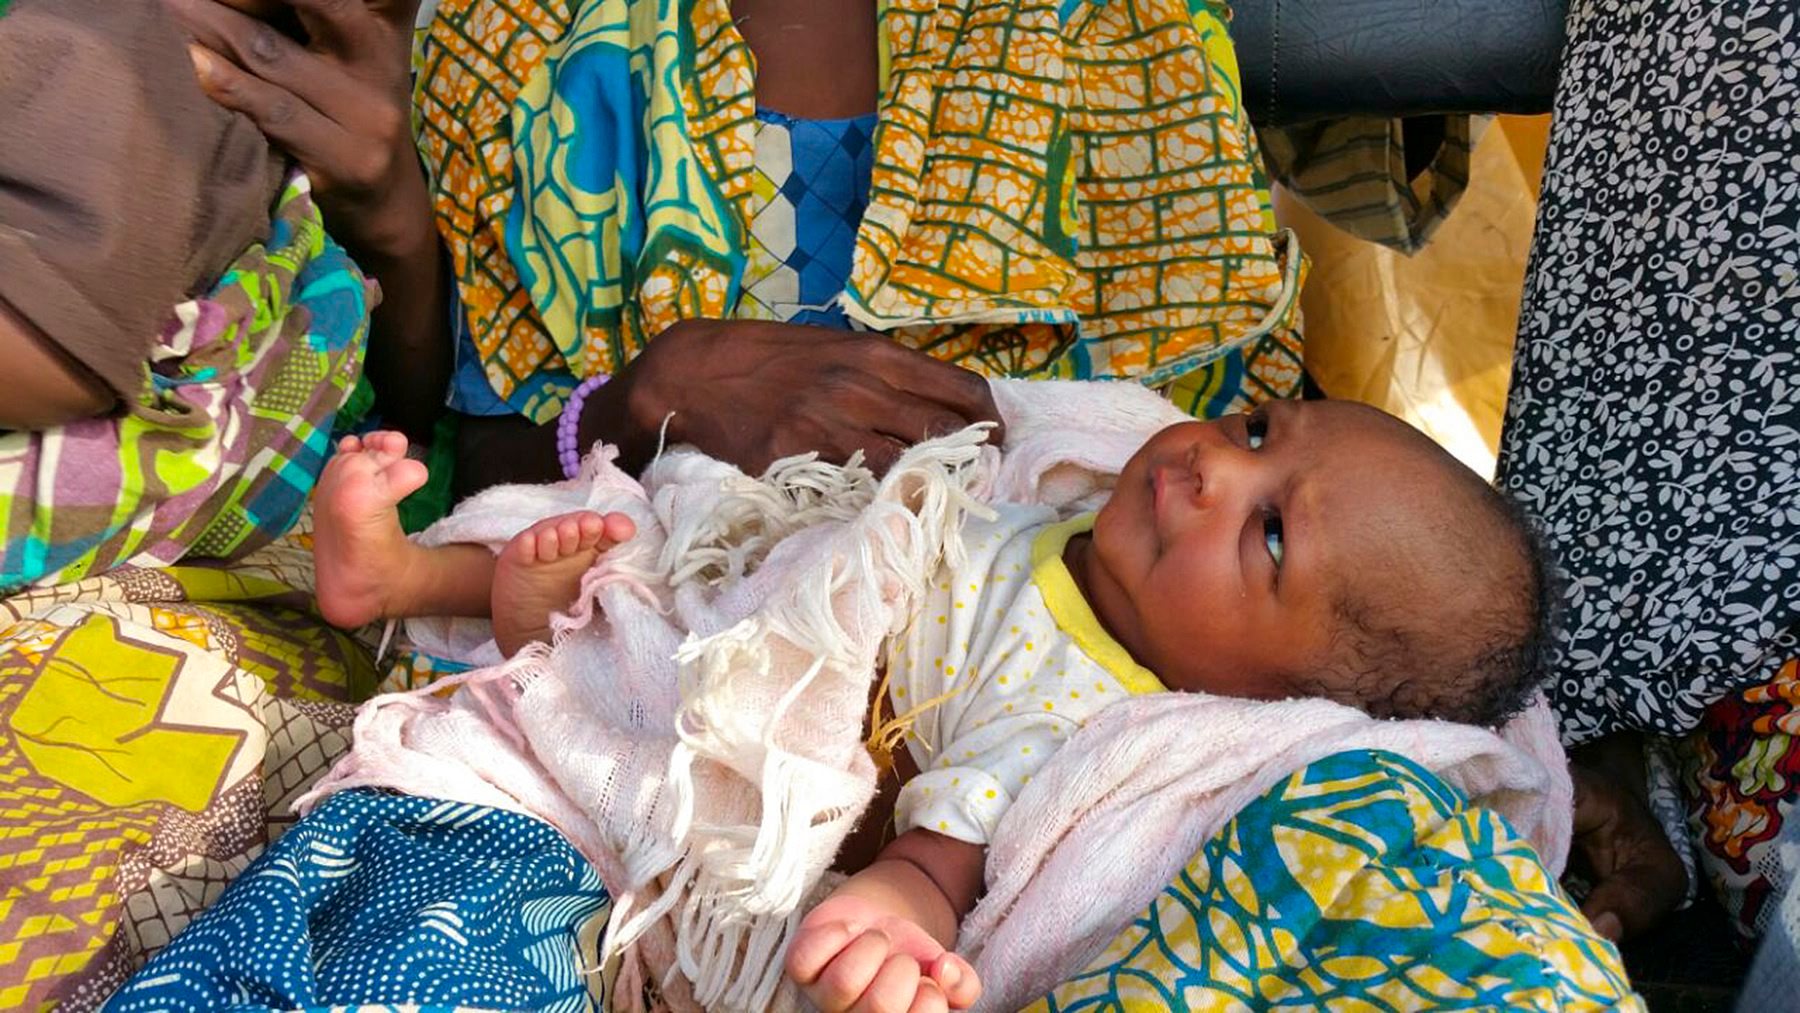 O Fundo das Nações Unidas para a Infância (Unicef) estima que mais de metade dos nascimentos aconteçam em oito países